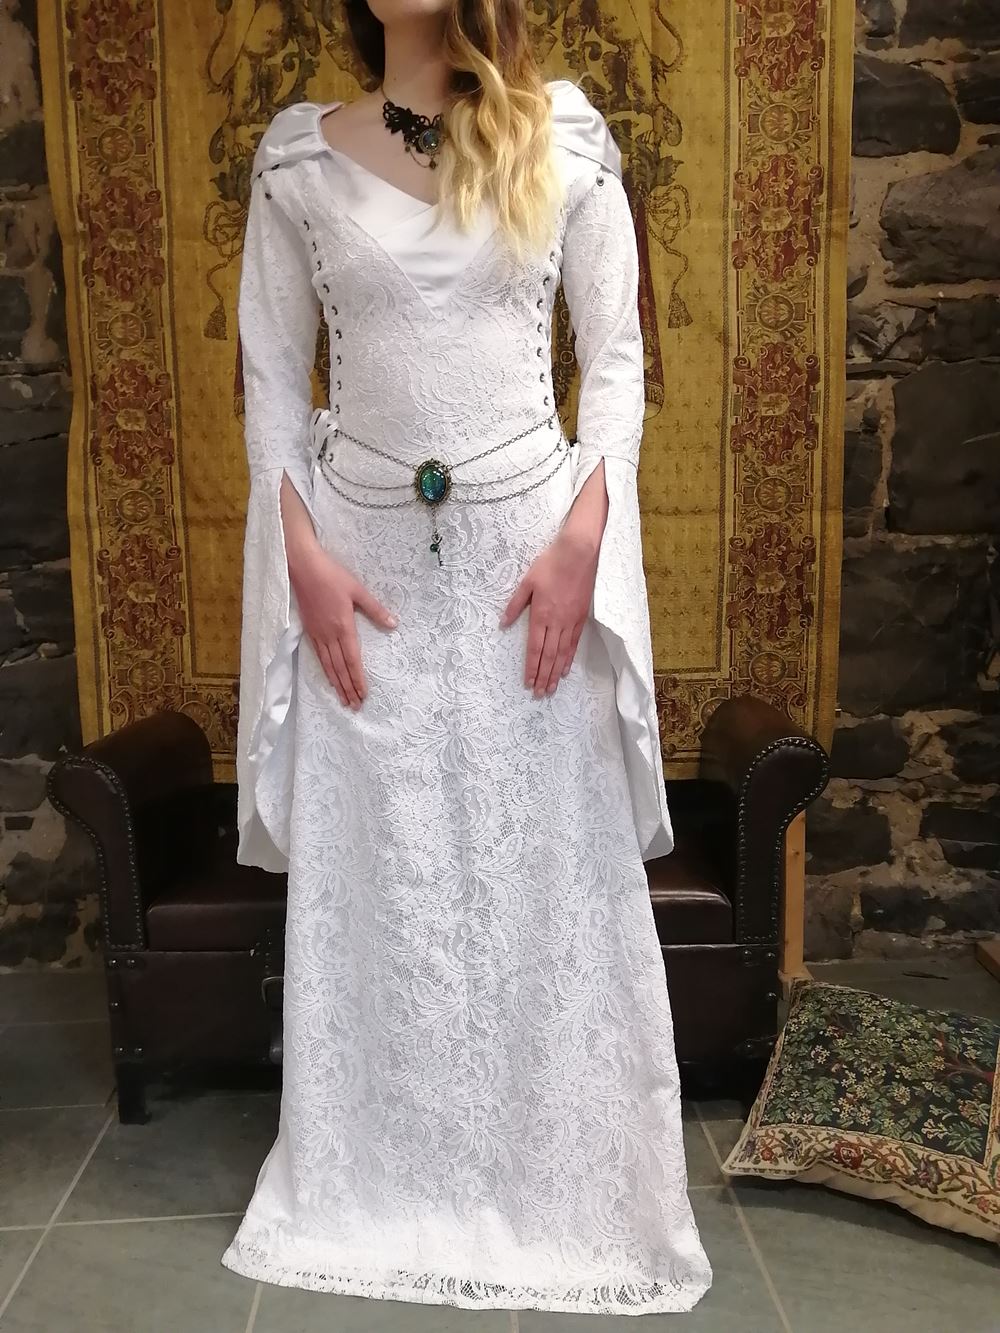 de novia medieval Marianne